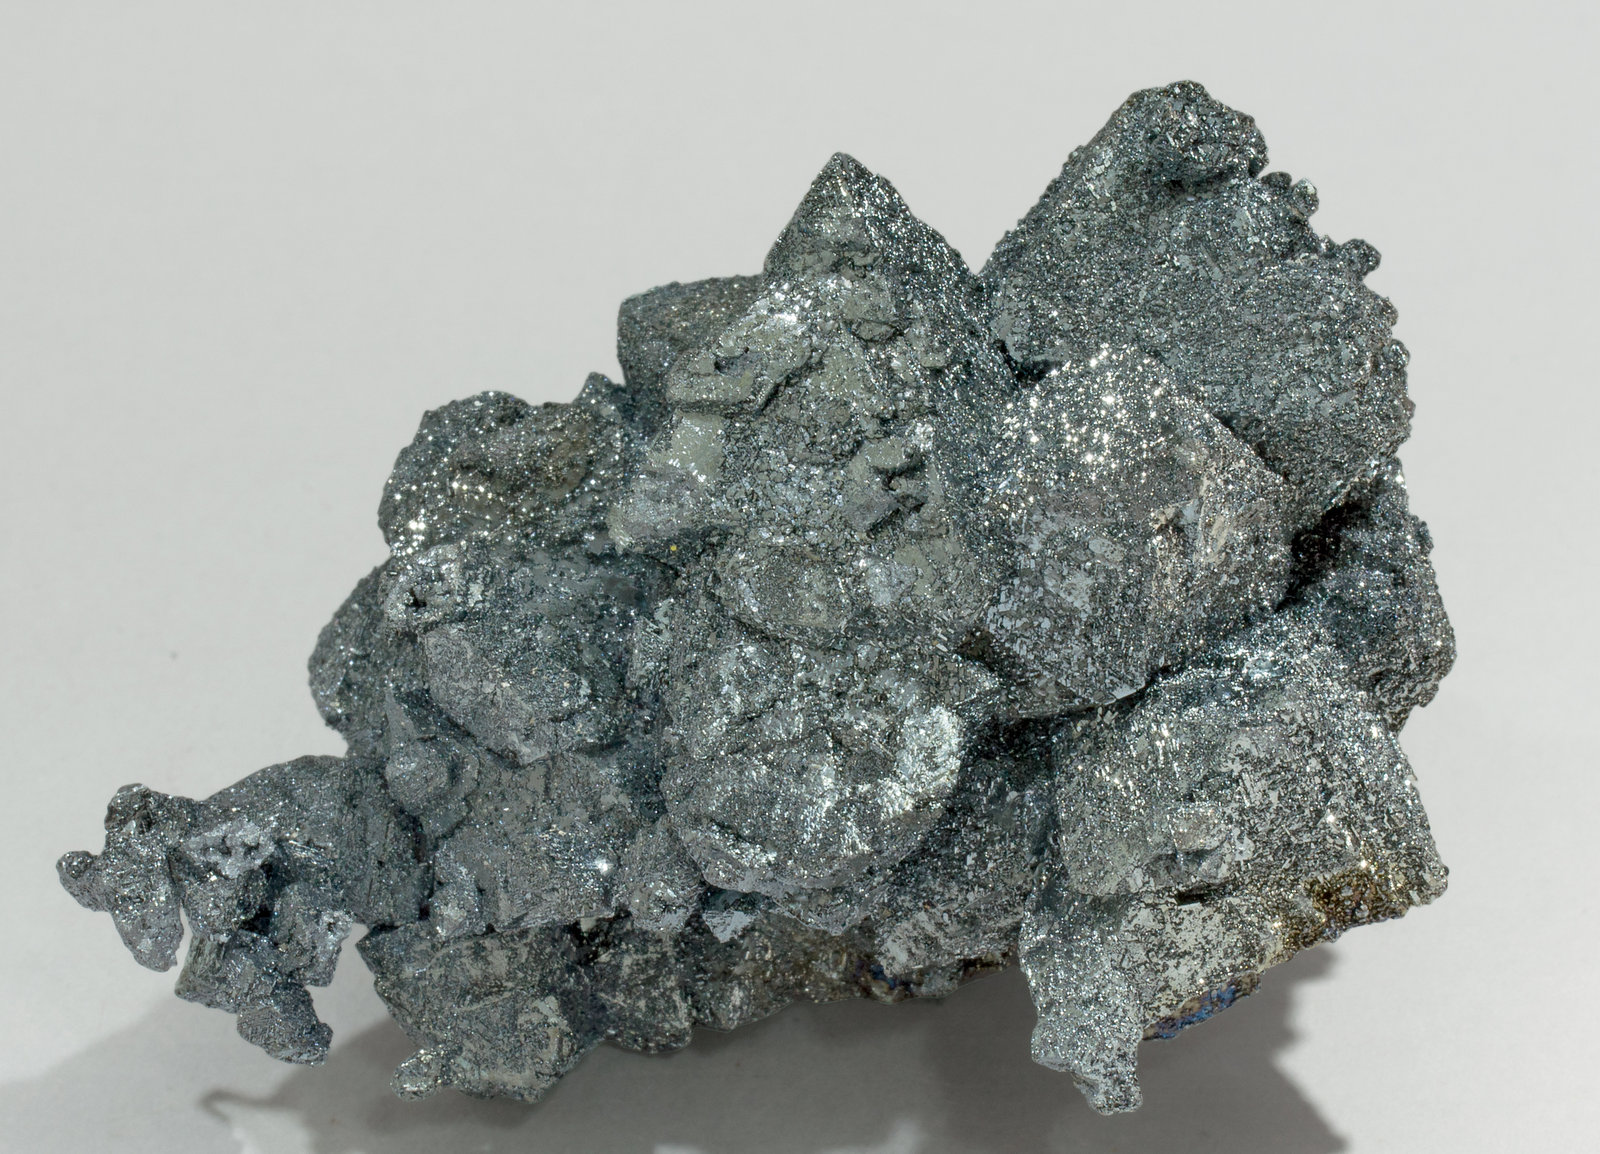 specimens/s_imagesZ1/Hematite-EY56Z1r.jpg